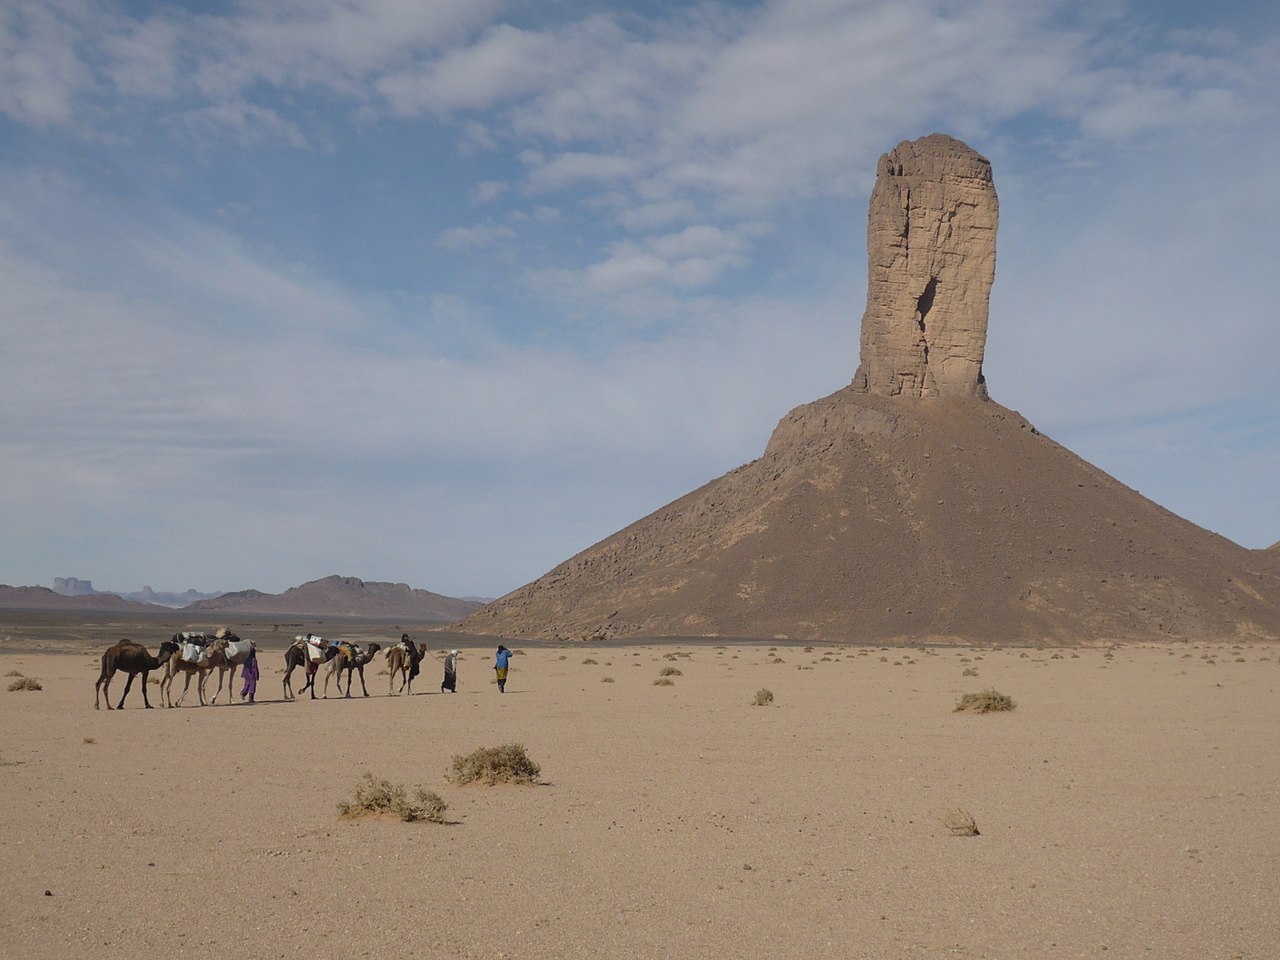 Ostanets en el Sahara, creado por la meteorización de roca